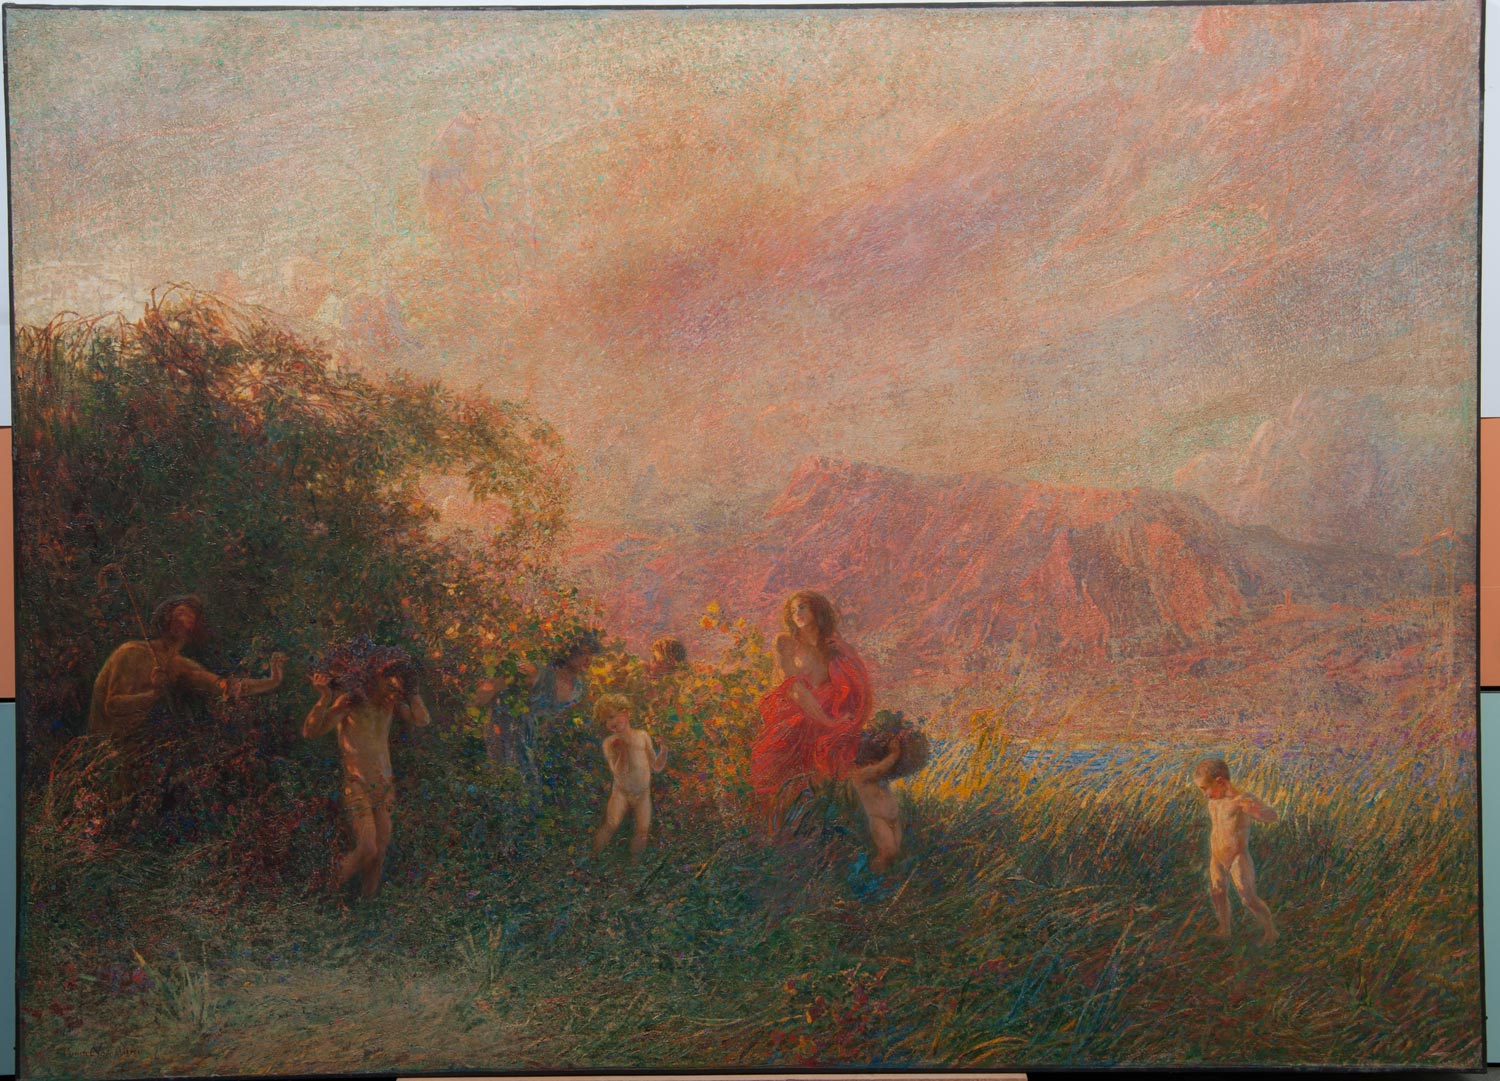 Plinio Nomellini, Ditirambo (1905 circa; olio su tela, 128 x 178 cm; Novara, Galleria d’Arte Moderna “Paolo e Adele Giannoni”)